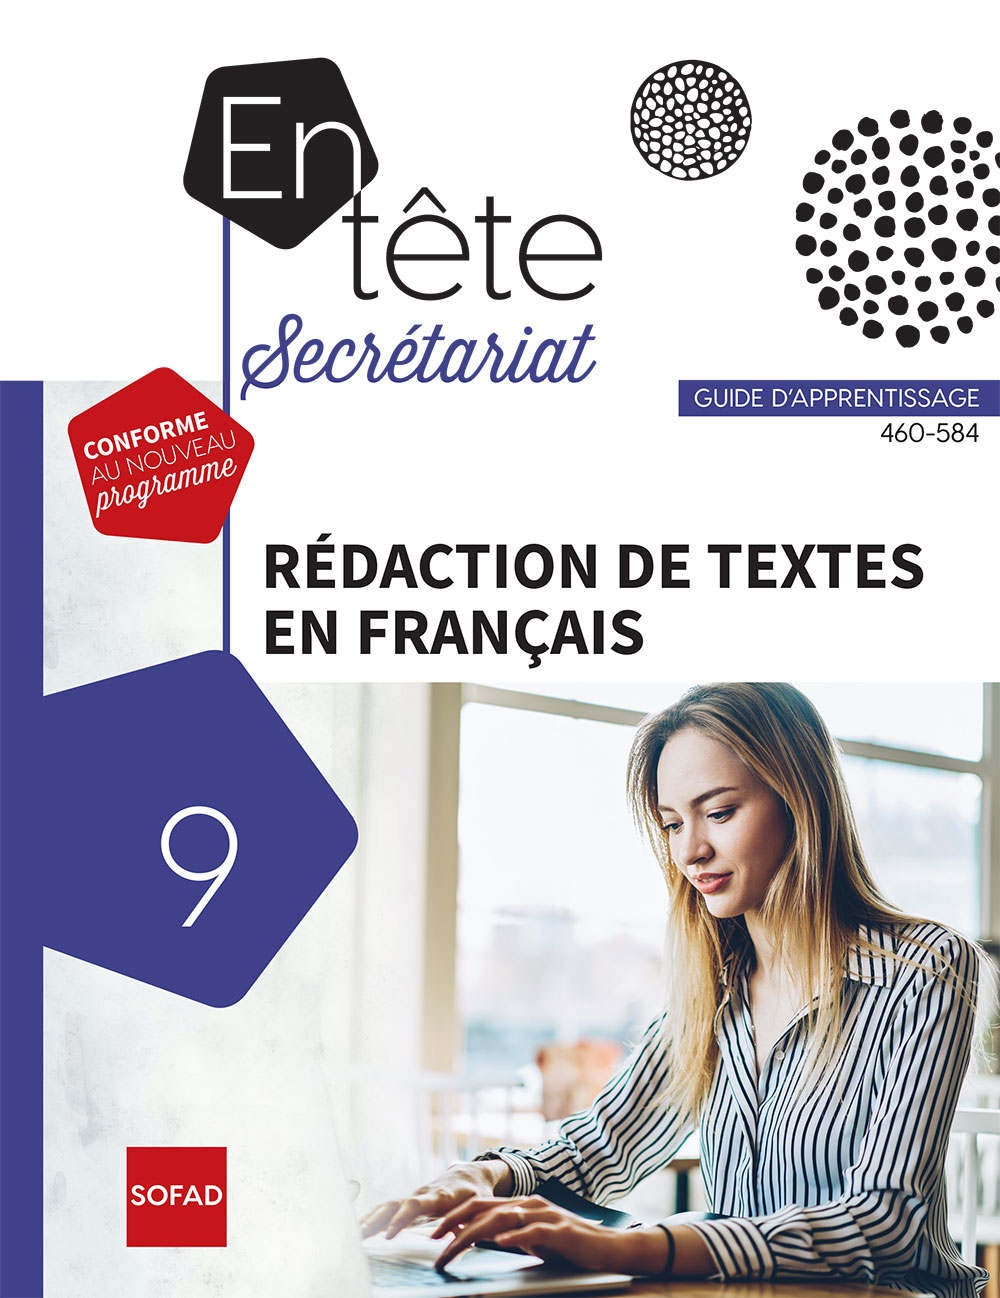 Rédaction de textes en français - 460-584 (FAD)